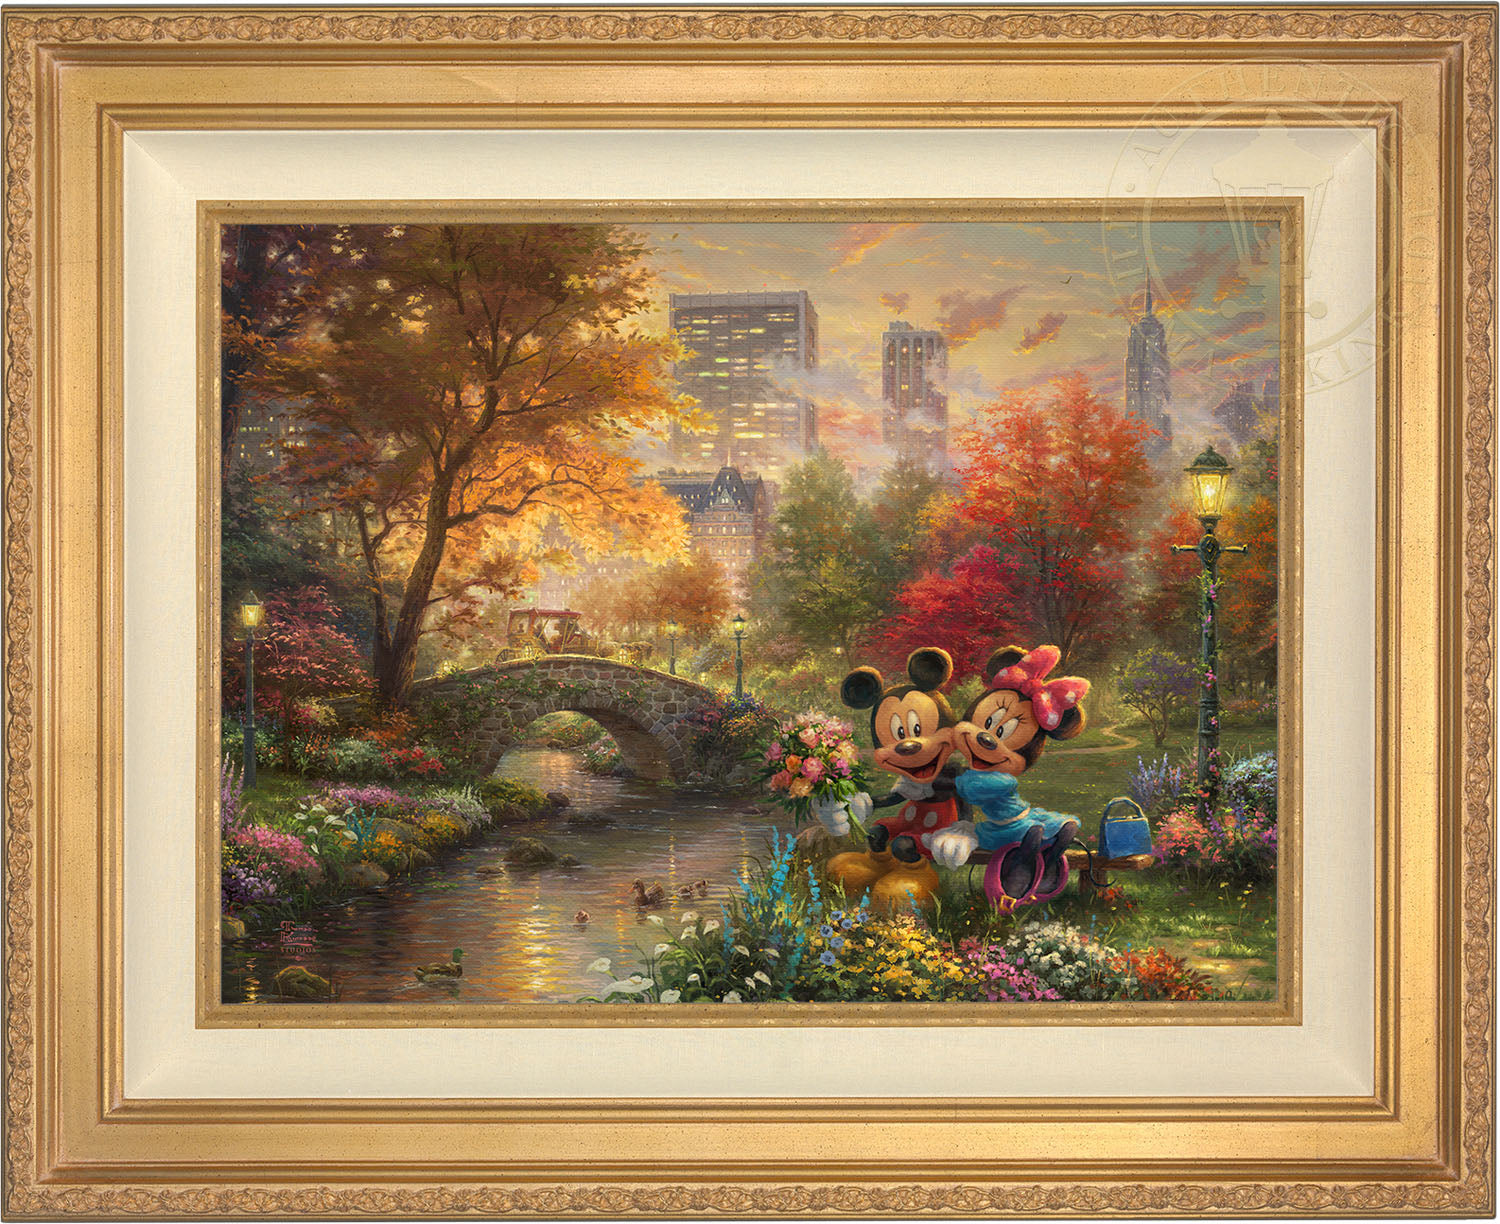 The Art Of Disney  Officially Licensed Artwork – Disney Art On Main Street